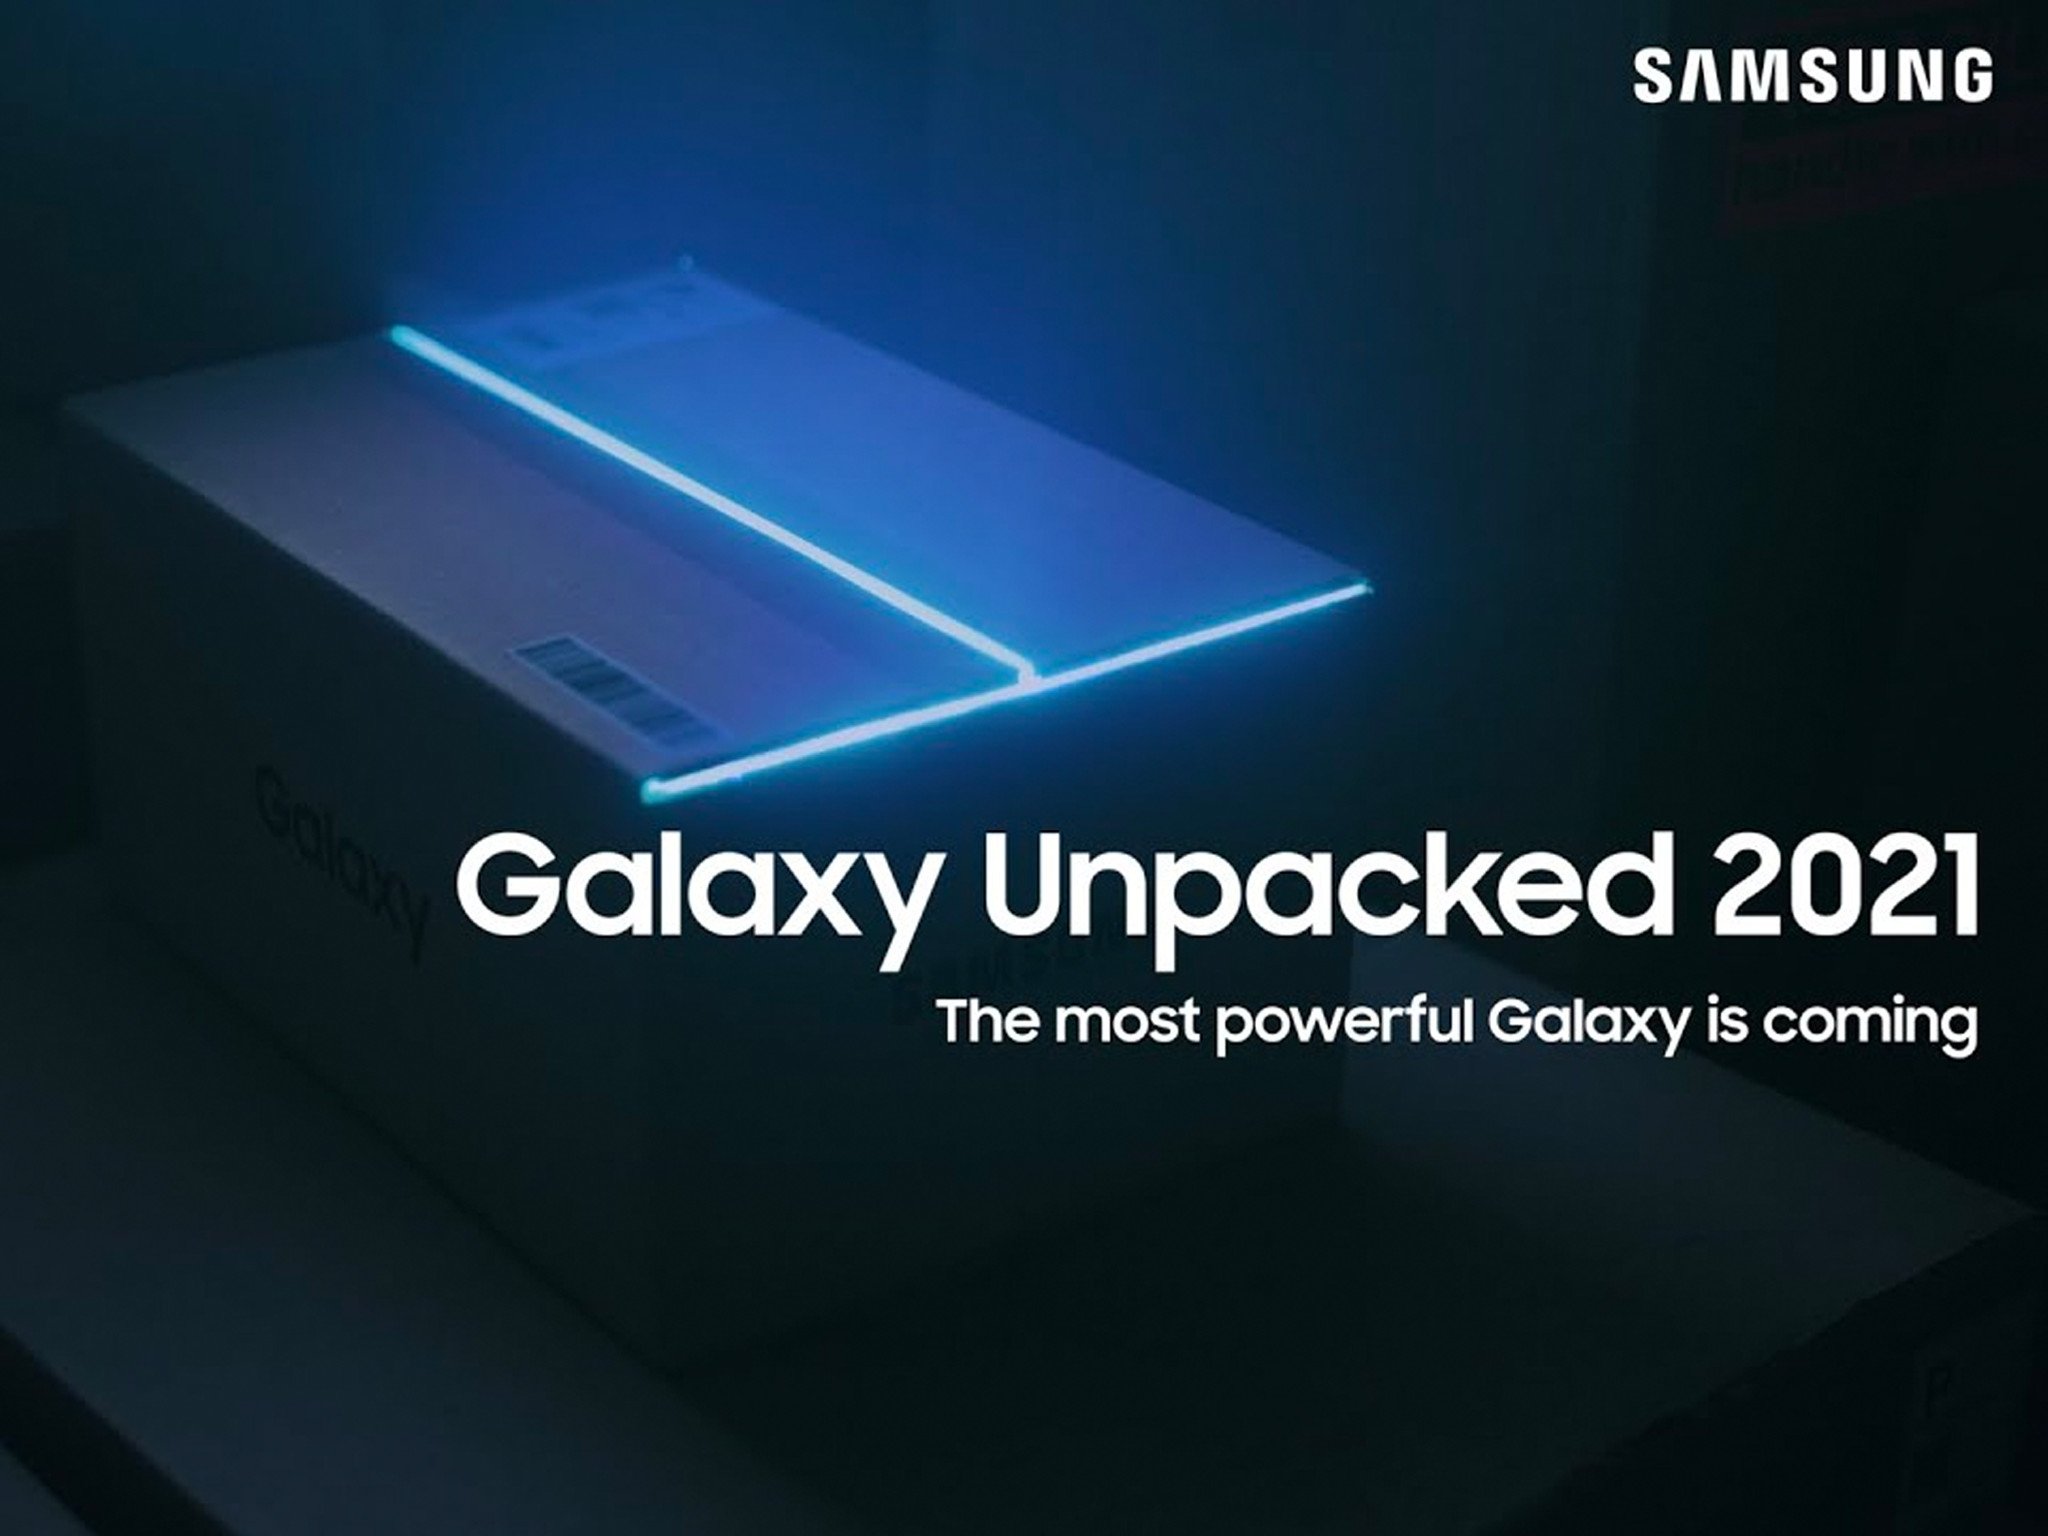 Samsung's latest Galaxy